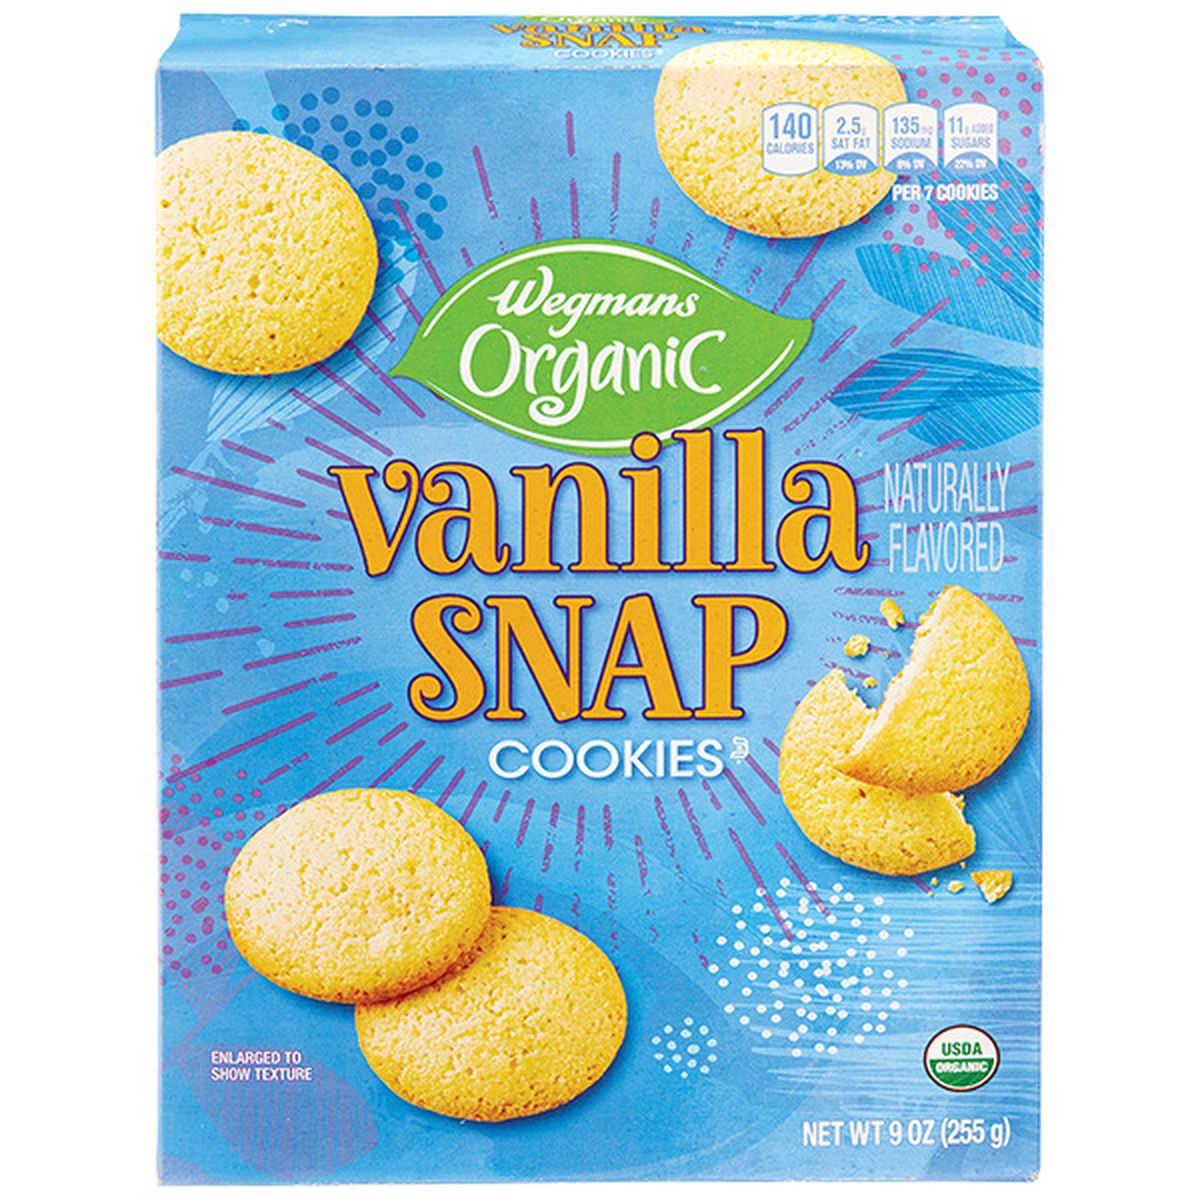 Calories in Wegmans Organic Vanilla Snap Cookies